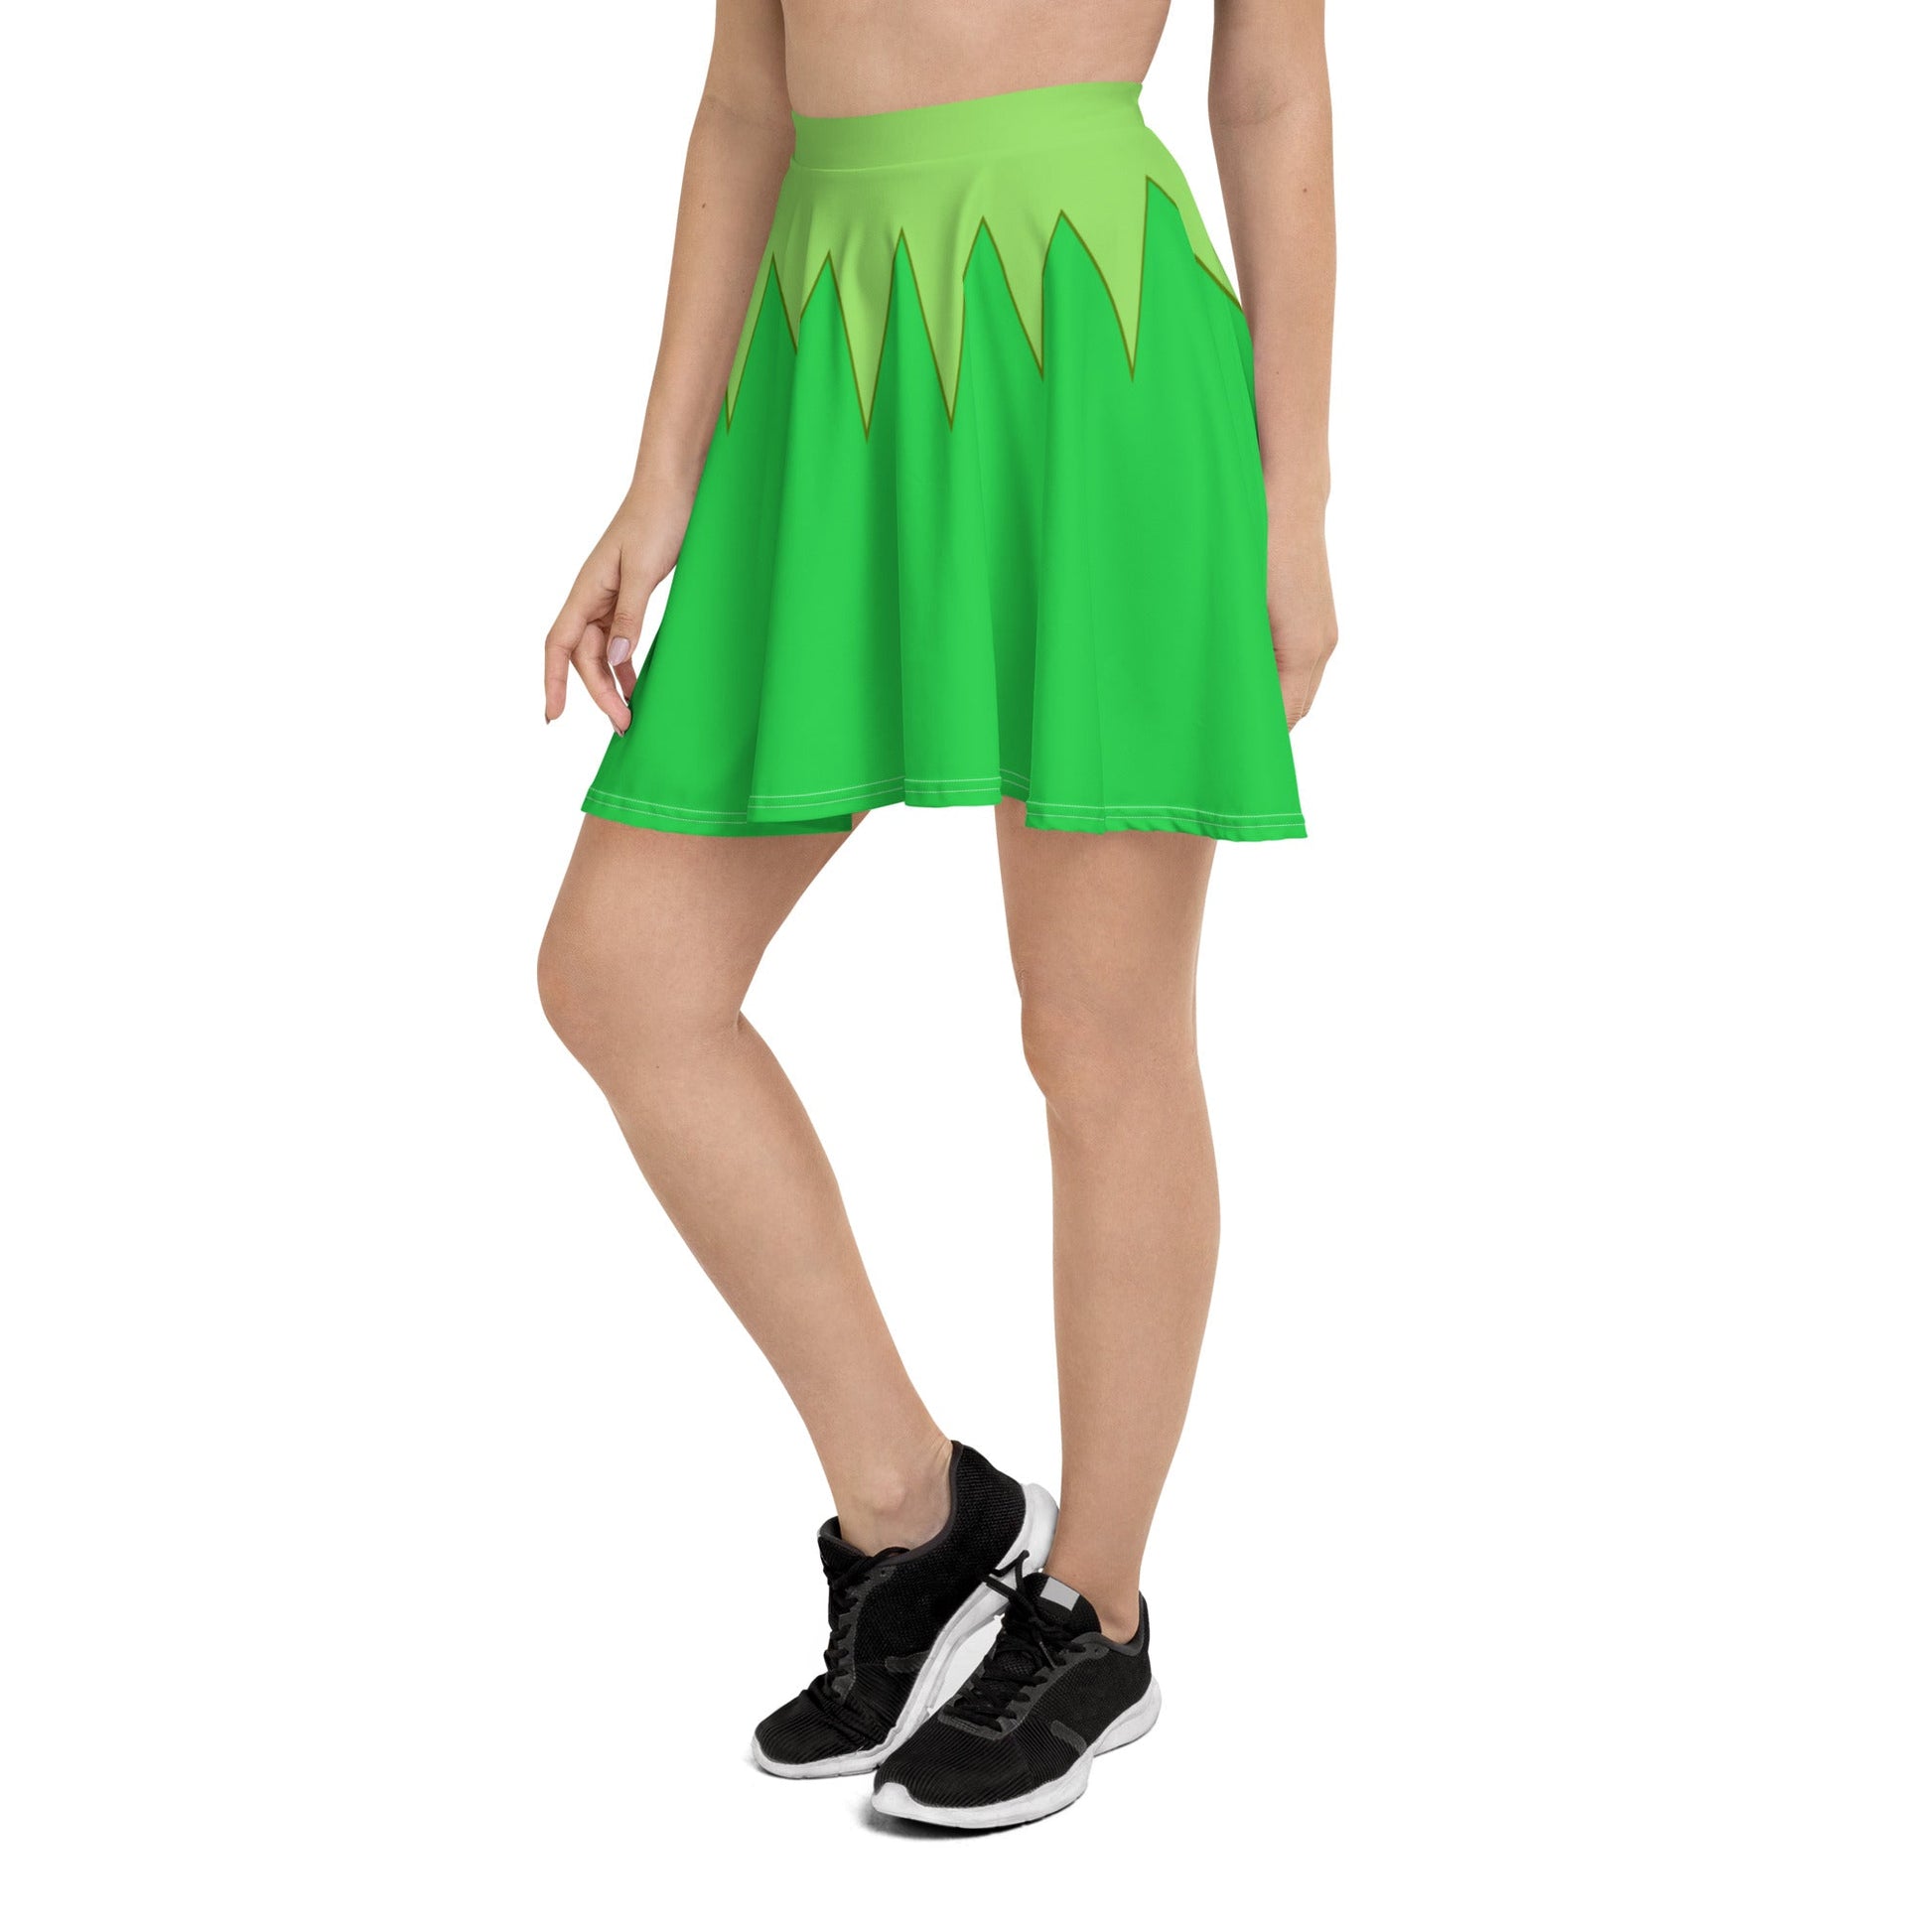 Green Frog Puppet Skater Skirt disney boundingdisney cosplayWrong Lever Clothing